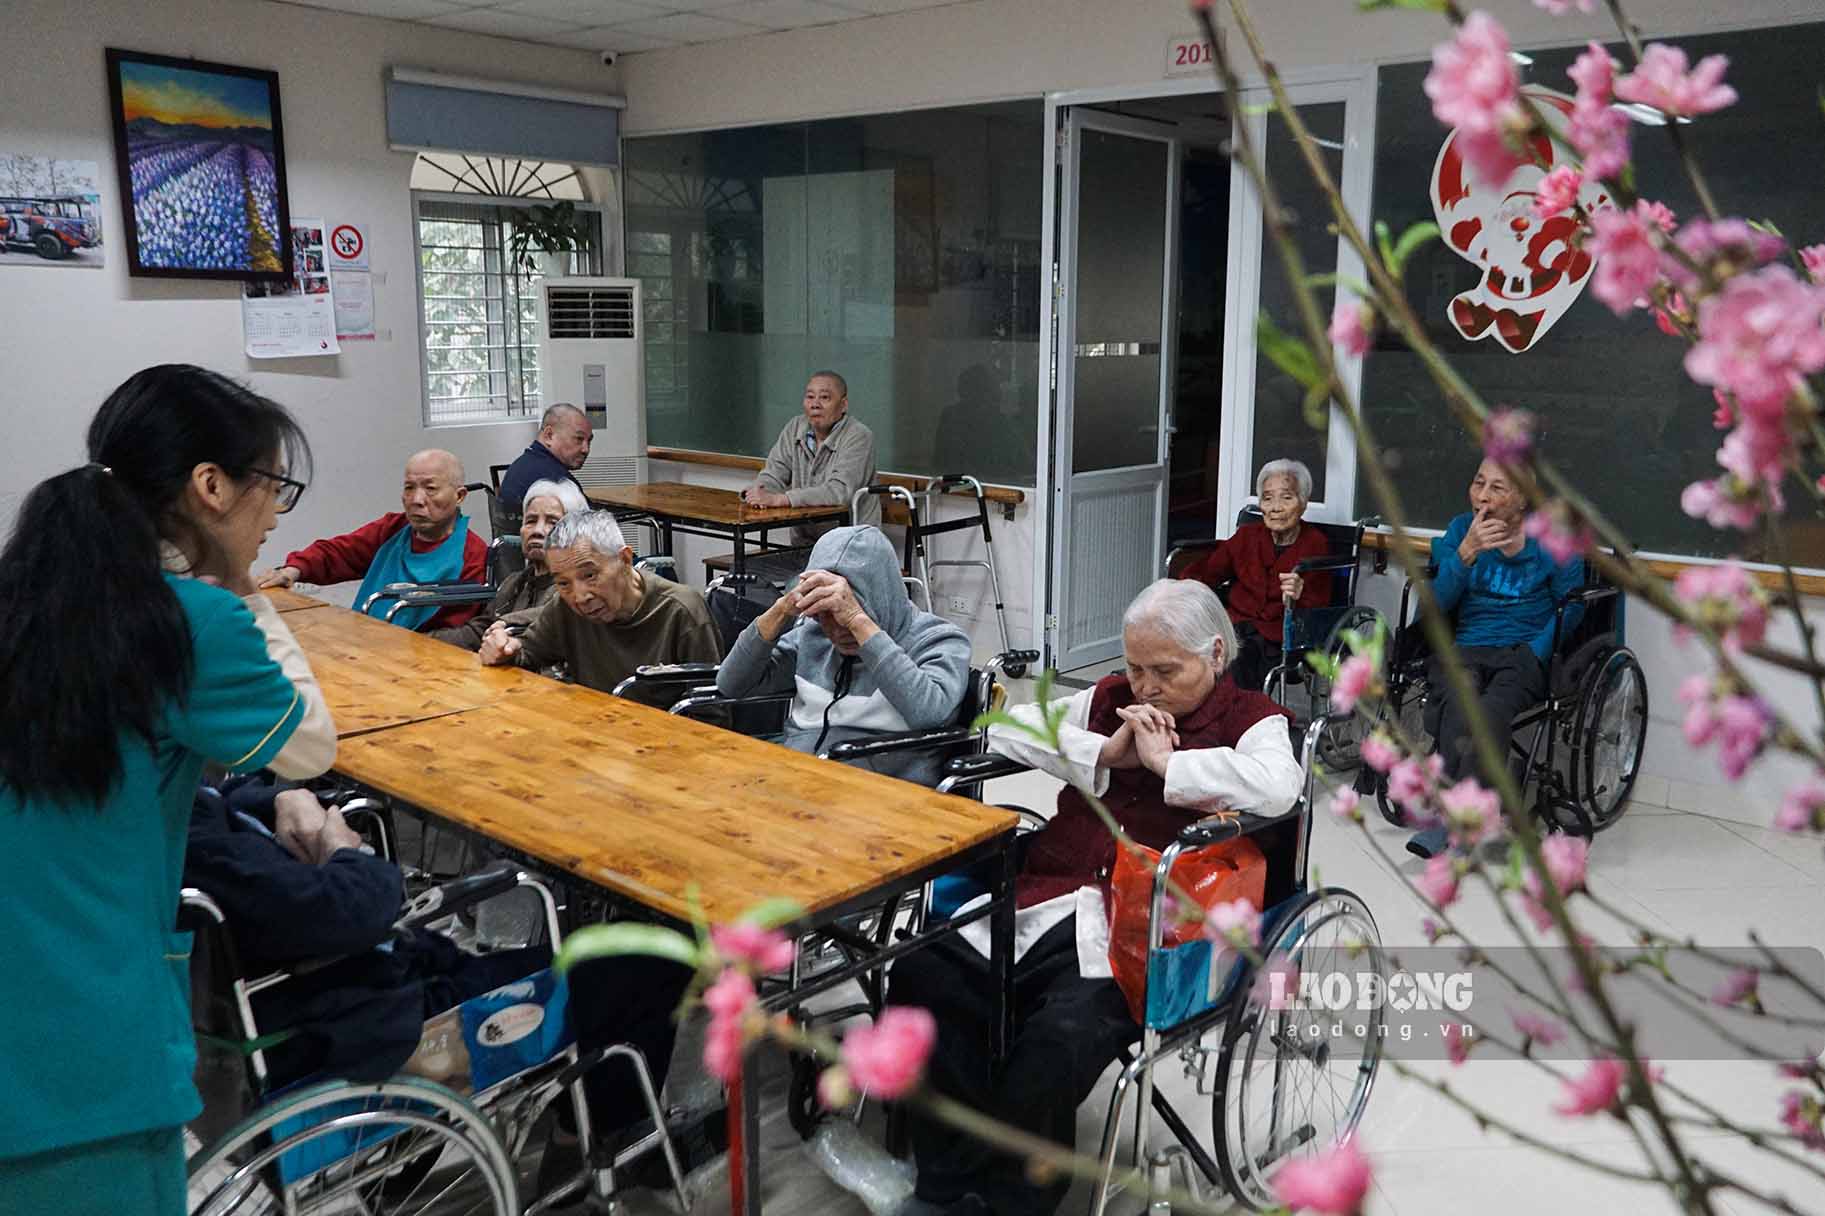 Tết là dịp để sum họp bên gia đình, nhưng vì hoàn cảnh, sức khỏe nên nhiều người cao tuổi lựa chọn đón Tết tại viện dưỡng lão.